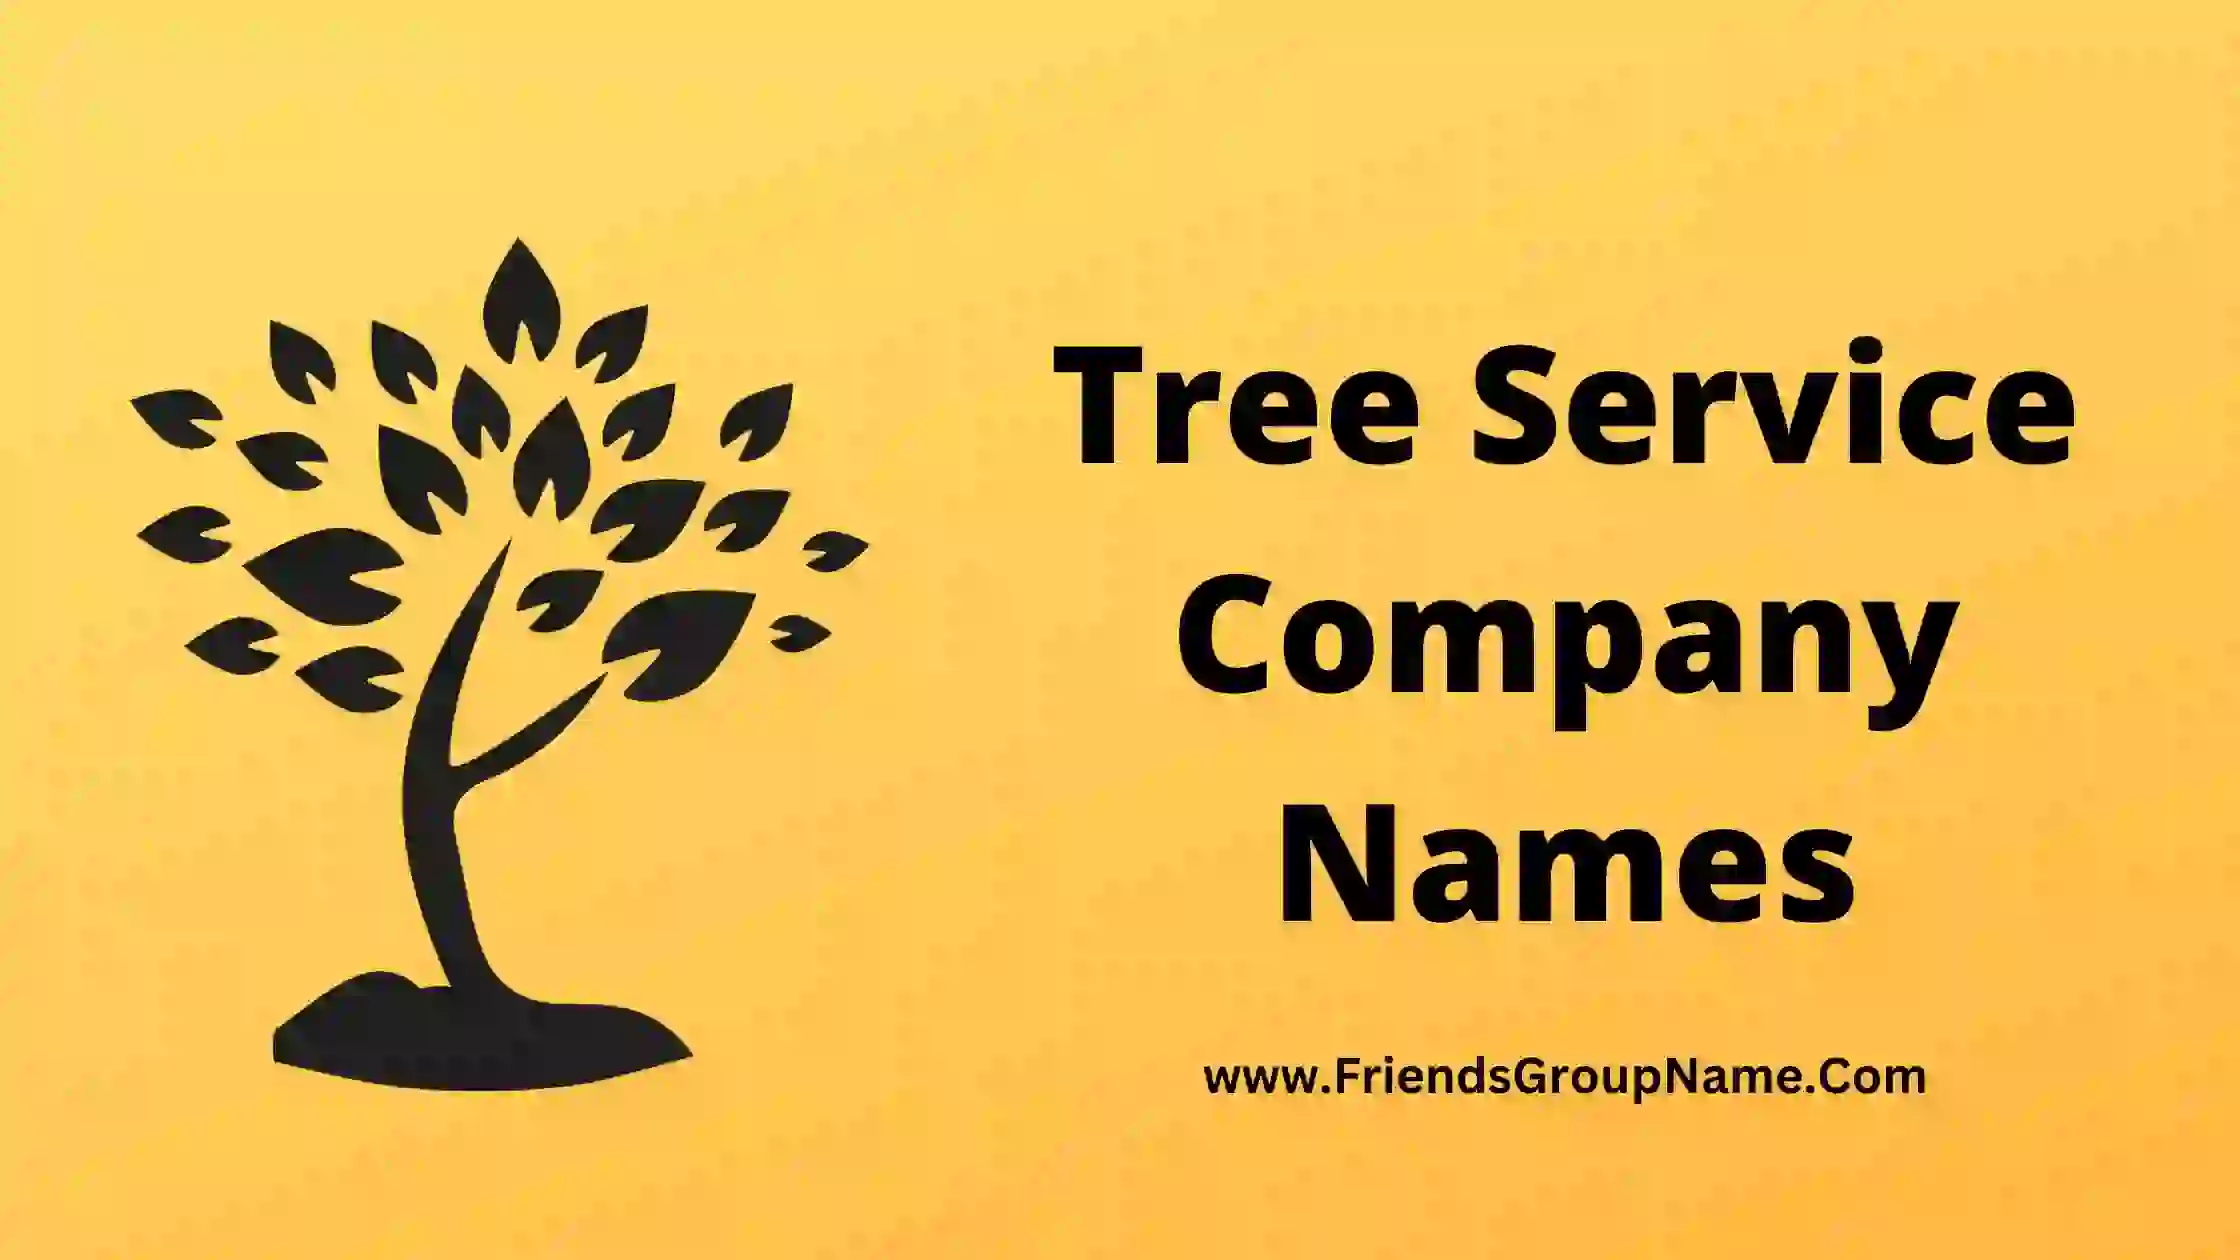 Tree Service Company Names